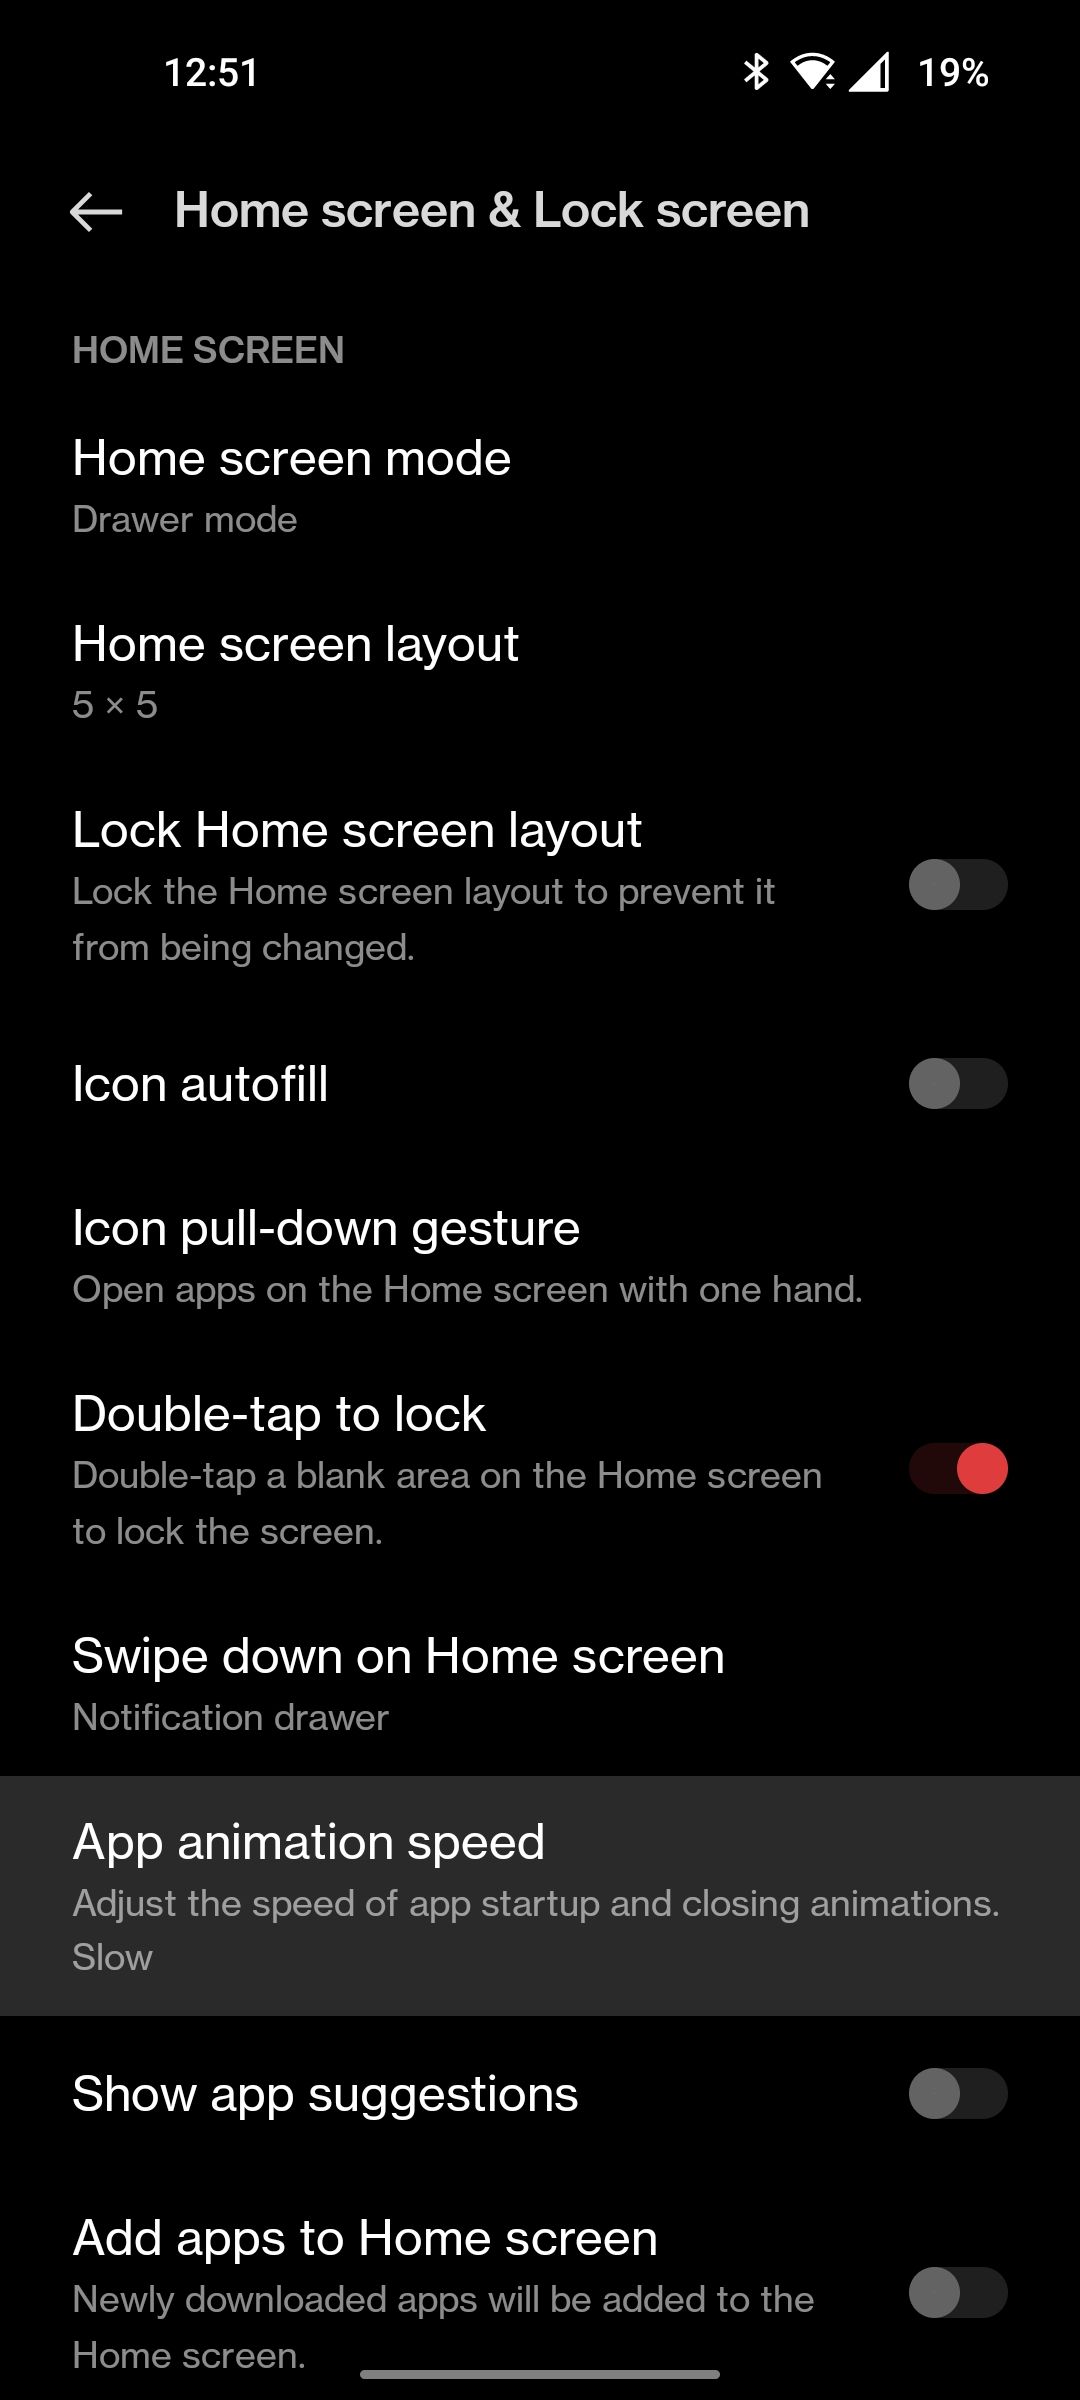 OnePlus home screen settings